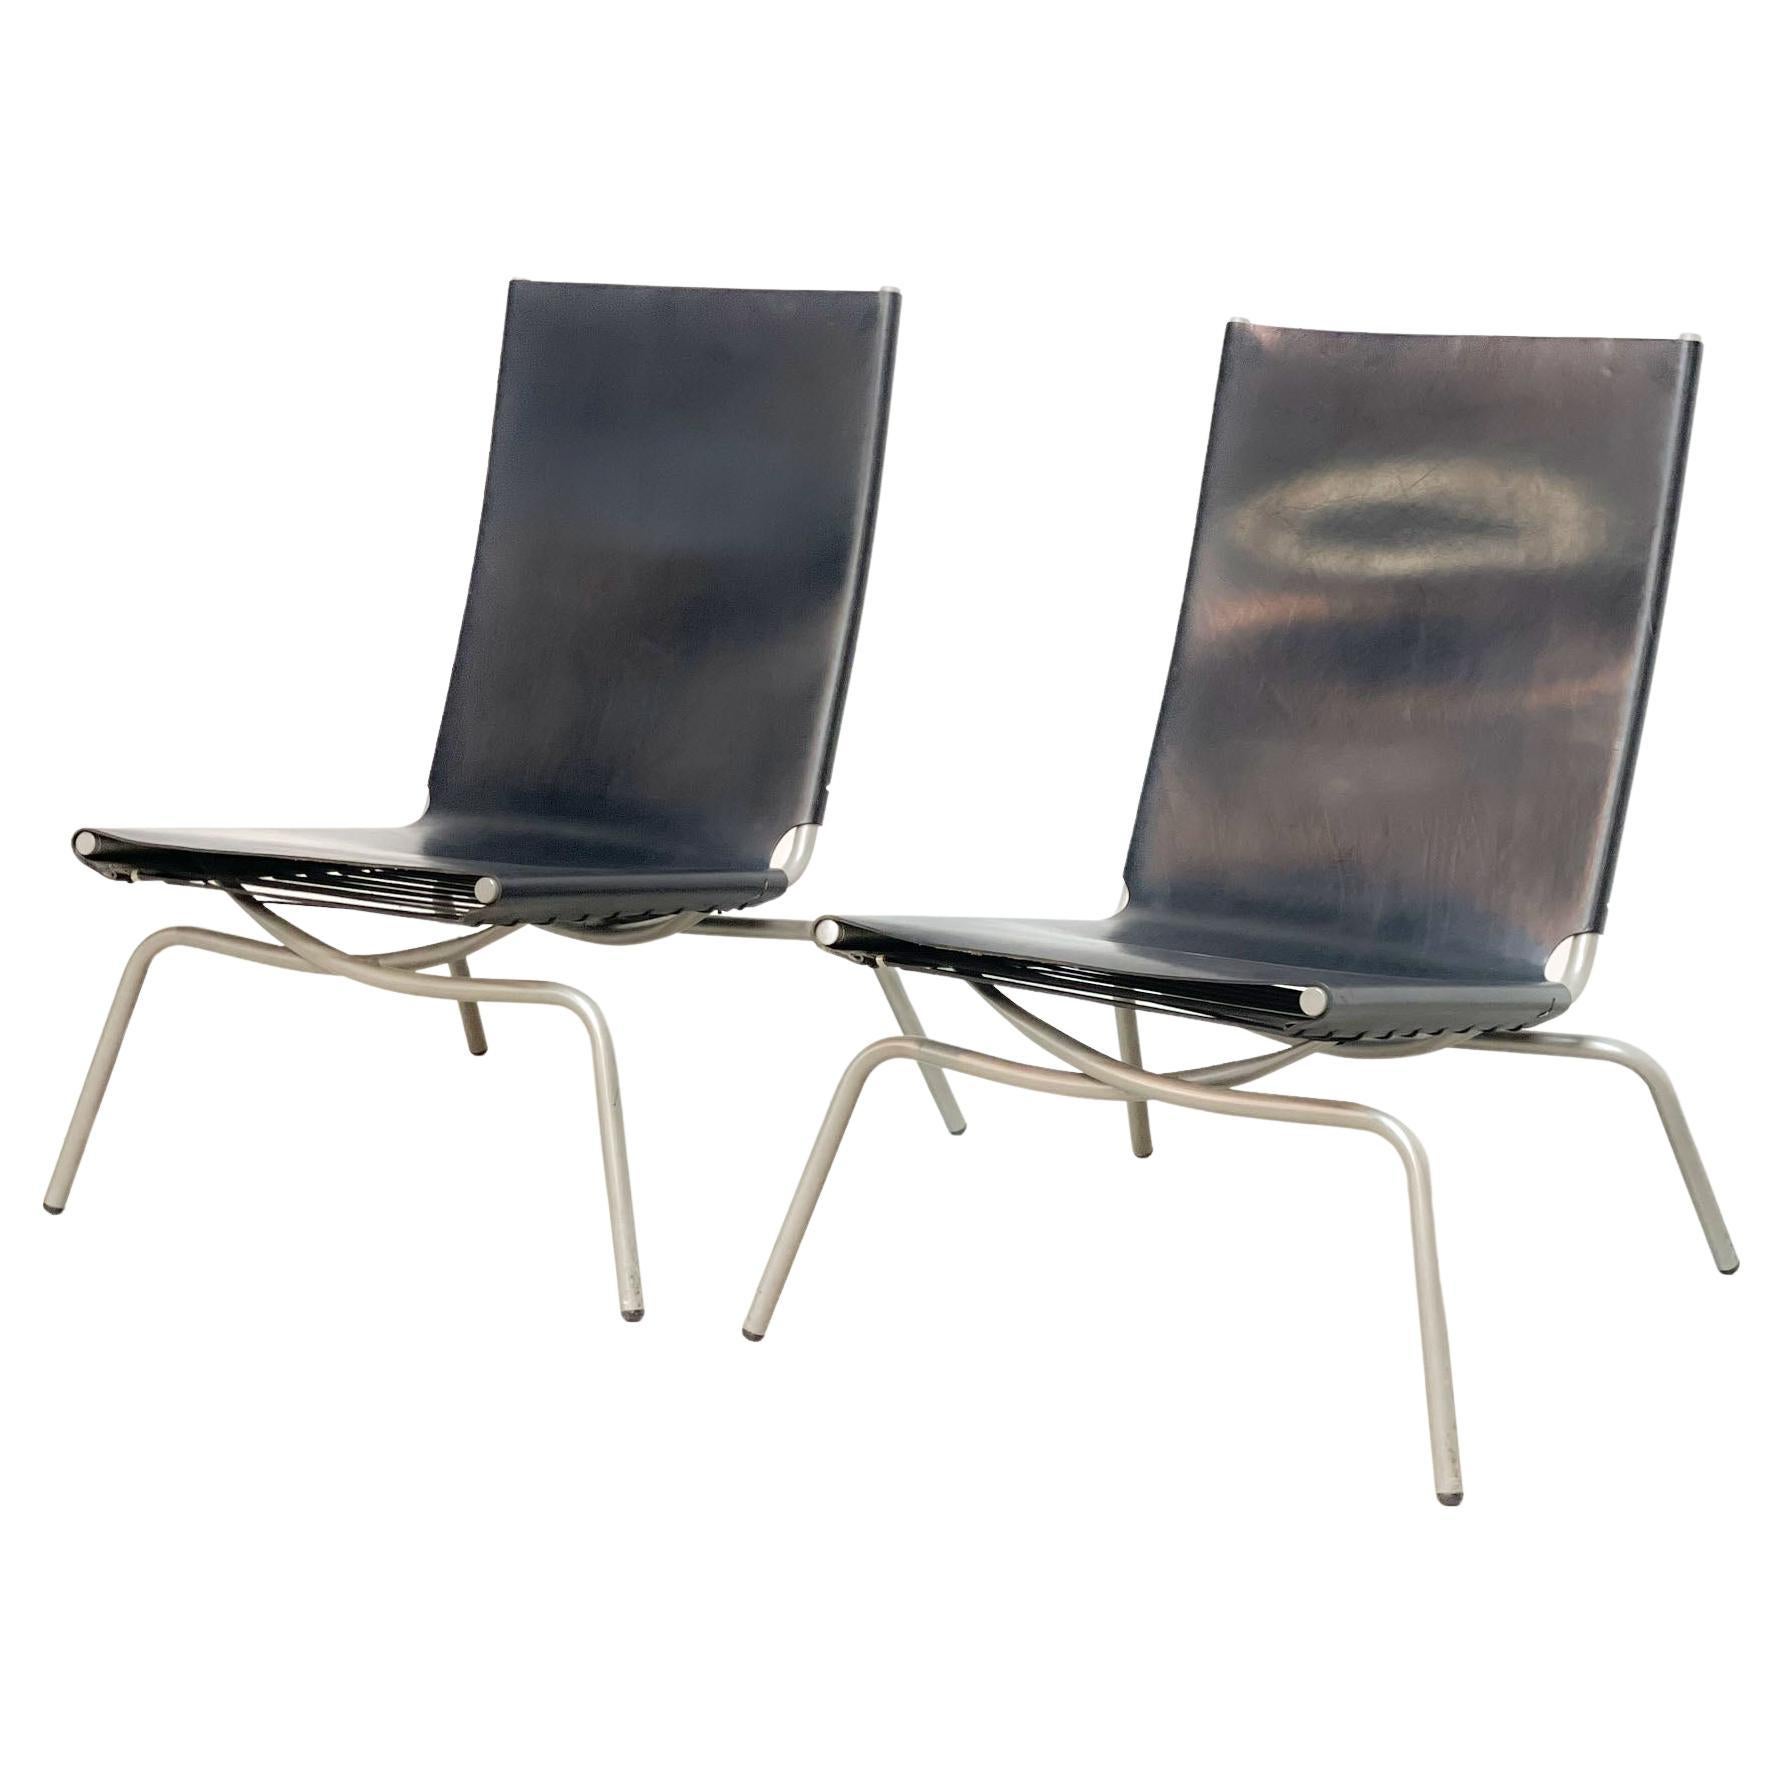 Set of Two Crossed Legged Chairs Fabiaan Van Severen